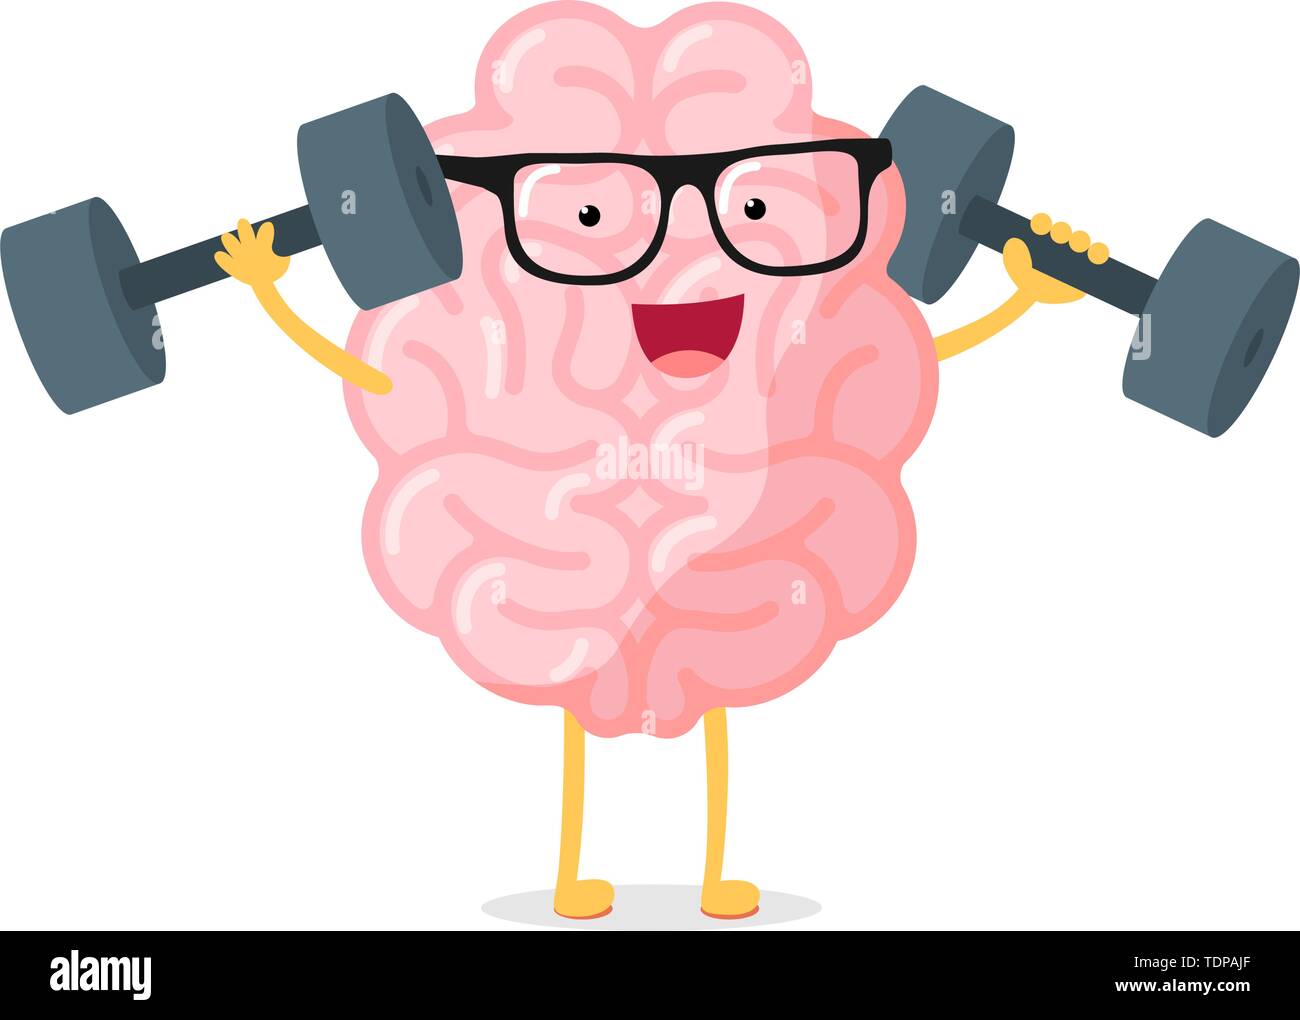 Cartoon smart starke menschliche Gehirn Charakter mit Brille power Training Konzept. Rock Gelehrsamkeit Intellekt mit Hanteln. Zentralen Nervensystems Orgel Stock Vektor